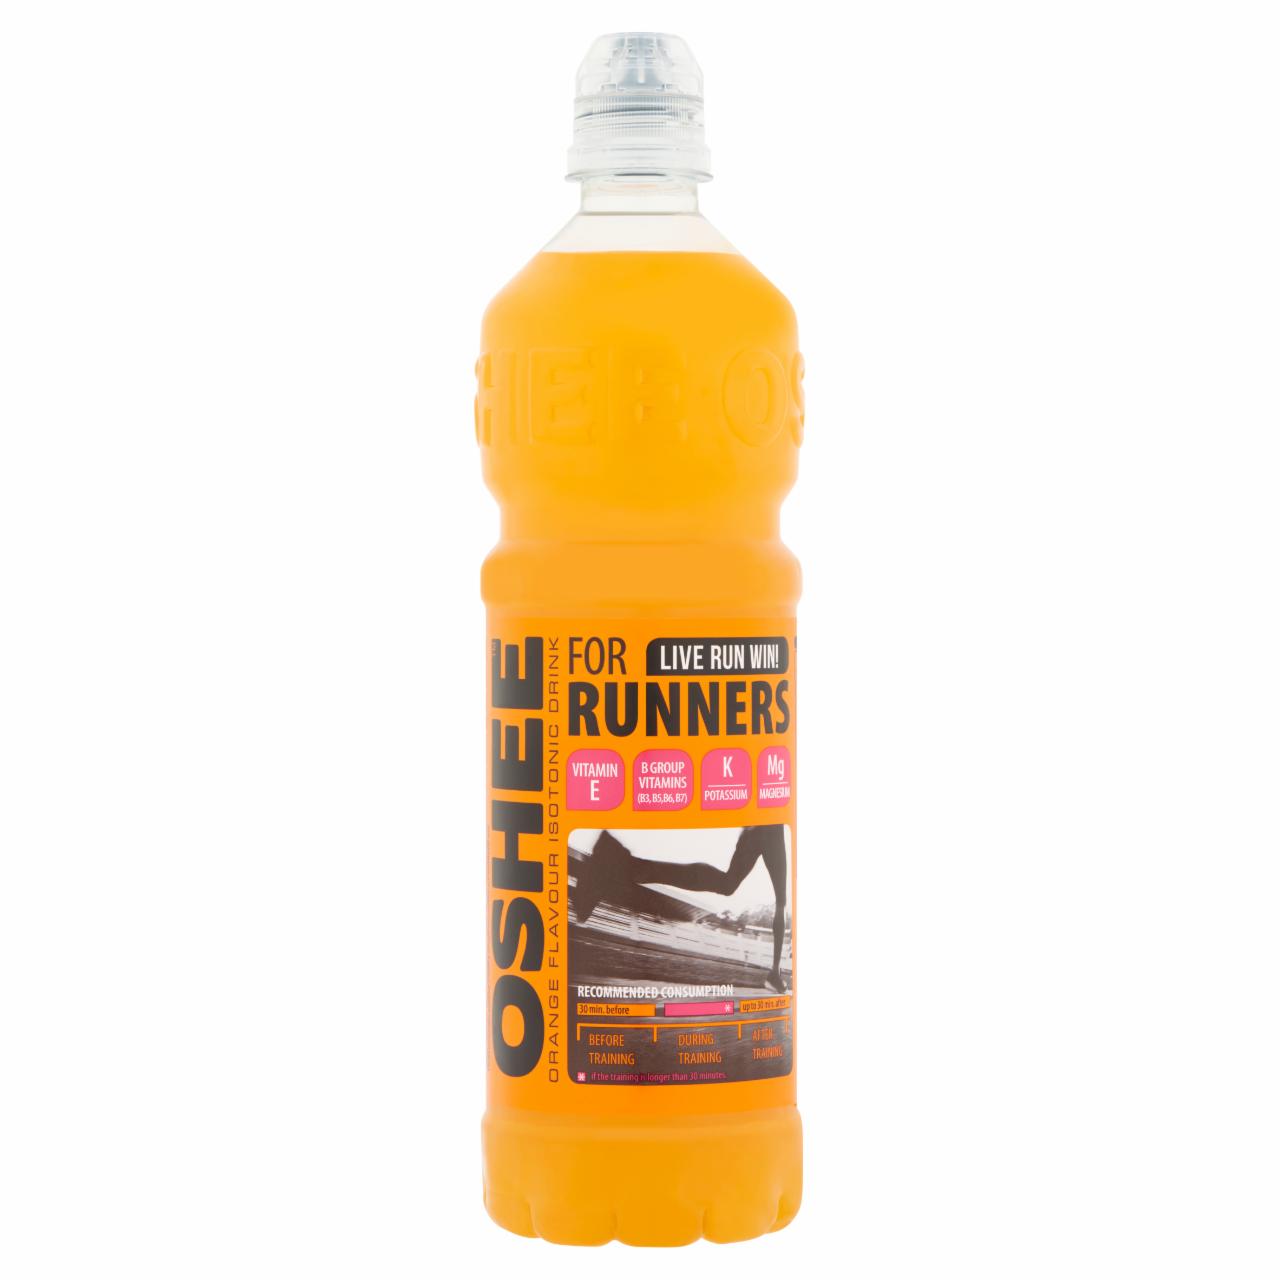 Képek - Oshee szénsavmentes narancs ízesítésű ital hozzáadott vitaminokkal 0,75 l